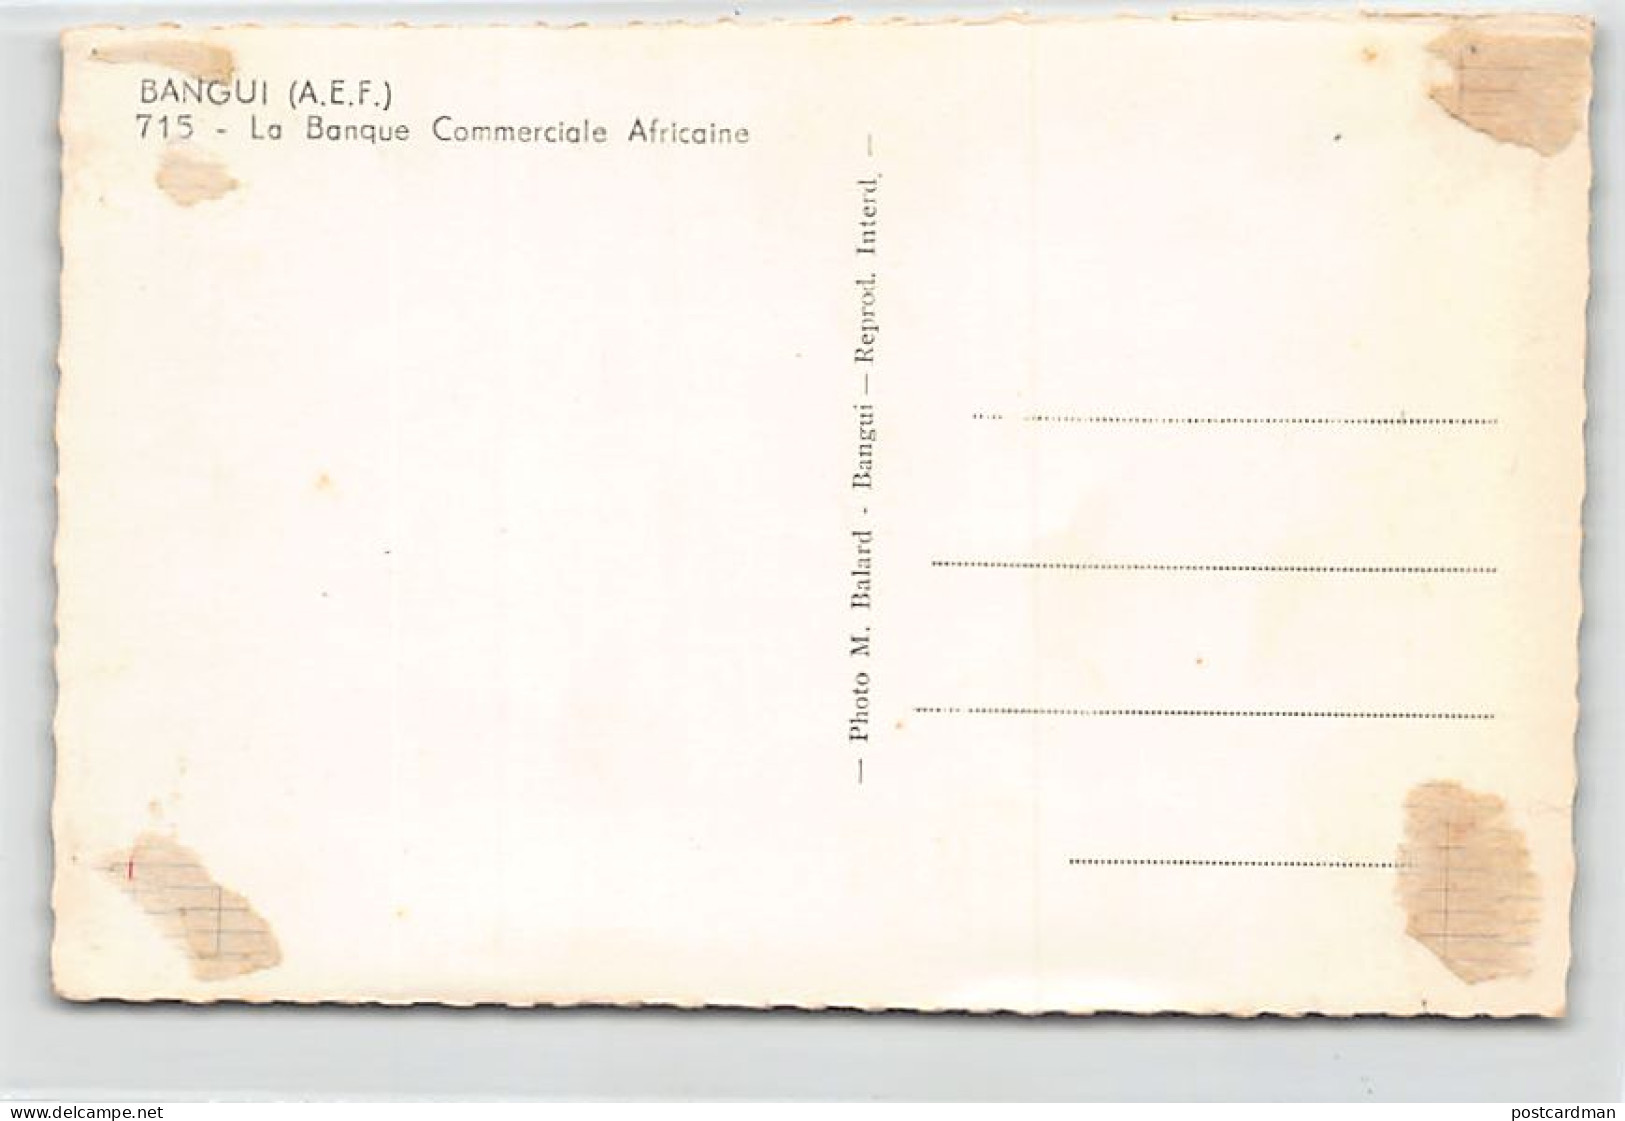 Centrafrique - BANGUI - La Banque Commerciale Africaine - Ed. M. Balard 715 - Central African Republic